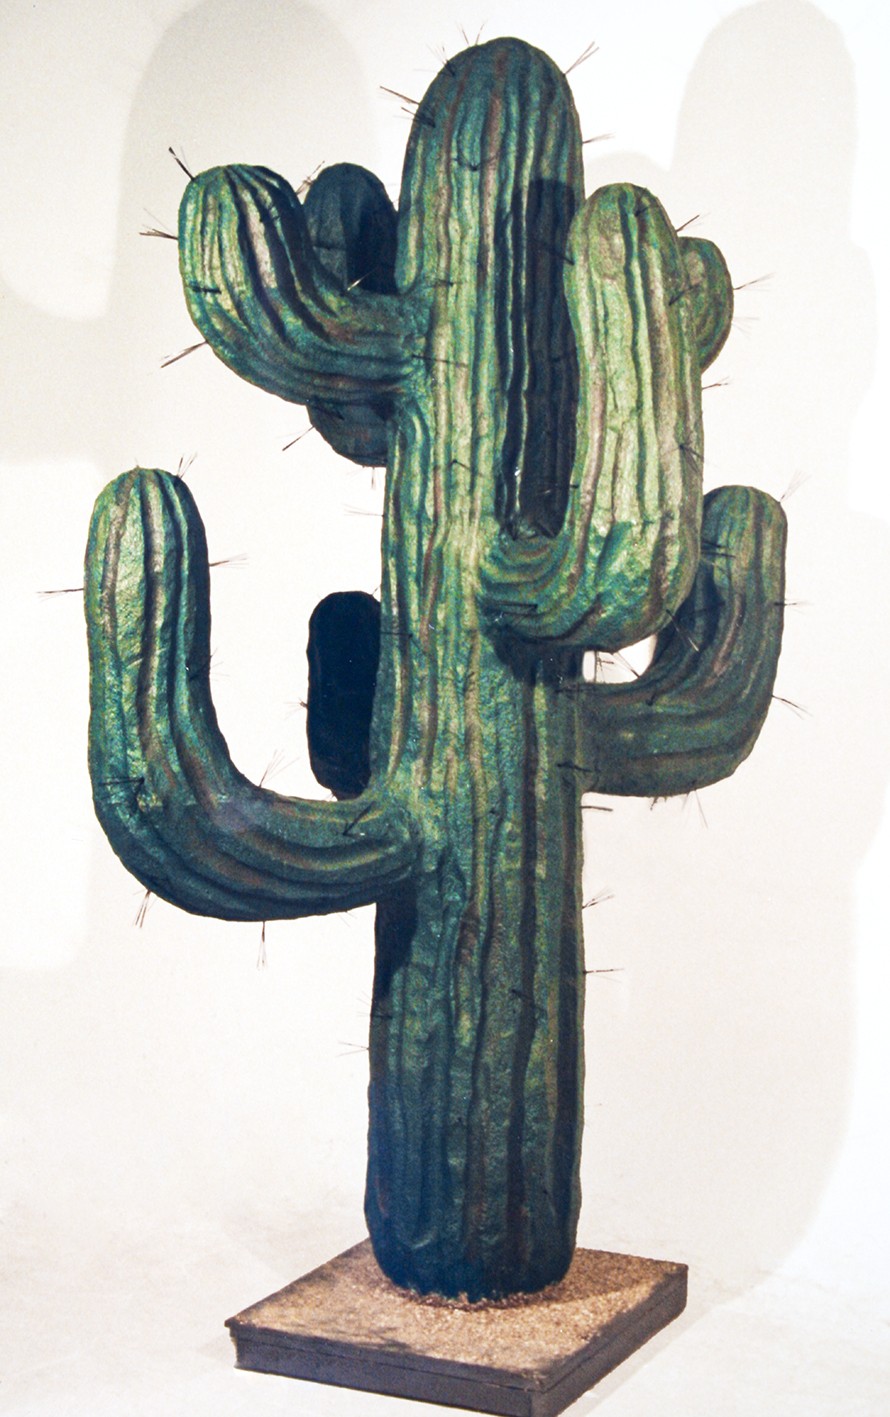 En stor, grønn kaktus med nåler